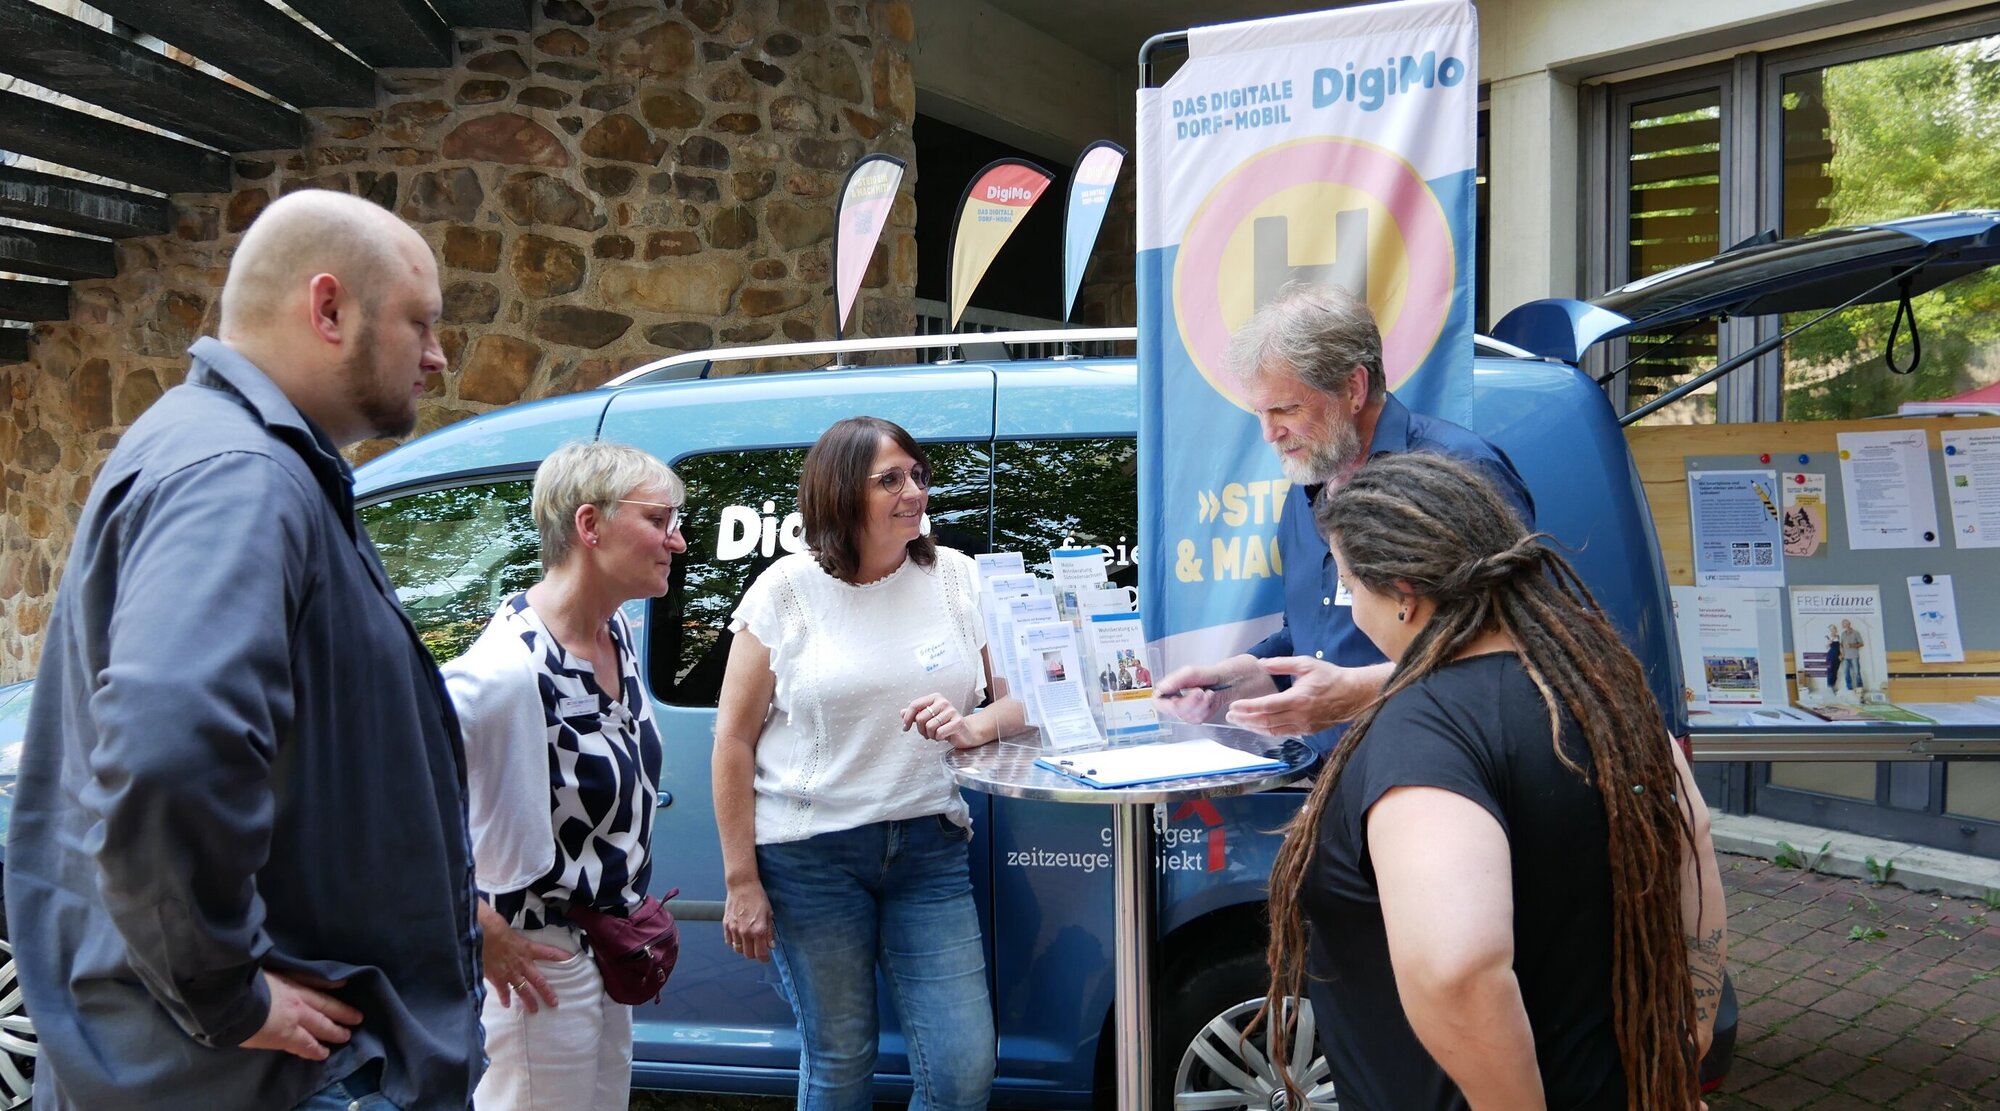 Teilnehmende des Freiwilligentreffens beim Digitalen Dorf-Mobil (LEB Niedersachsen)